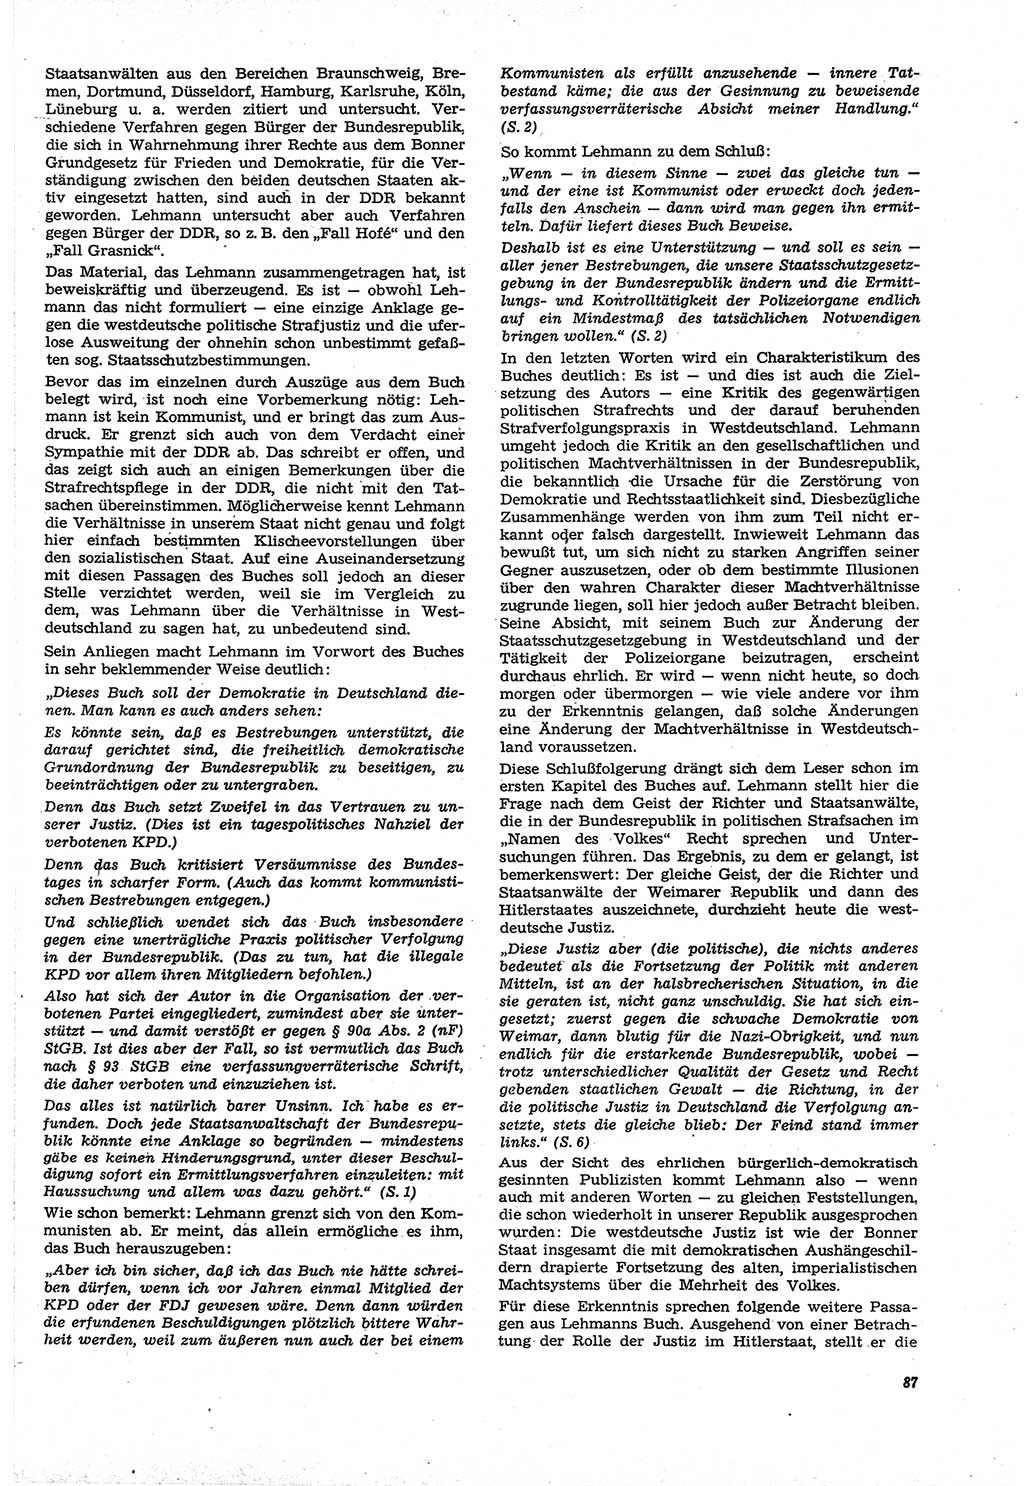 Neue Justiz (NJ), Zeitschrift für Recht und Rechtswissenschaft [Deutsche Demokratische Republik (DDR)], 21. Jahrgang 1967, Seite 87 (NJ DDR 1967, S. 87)